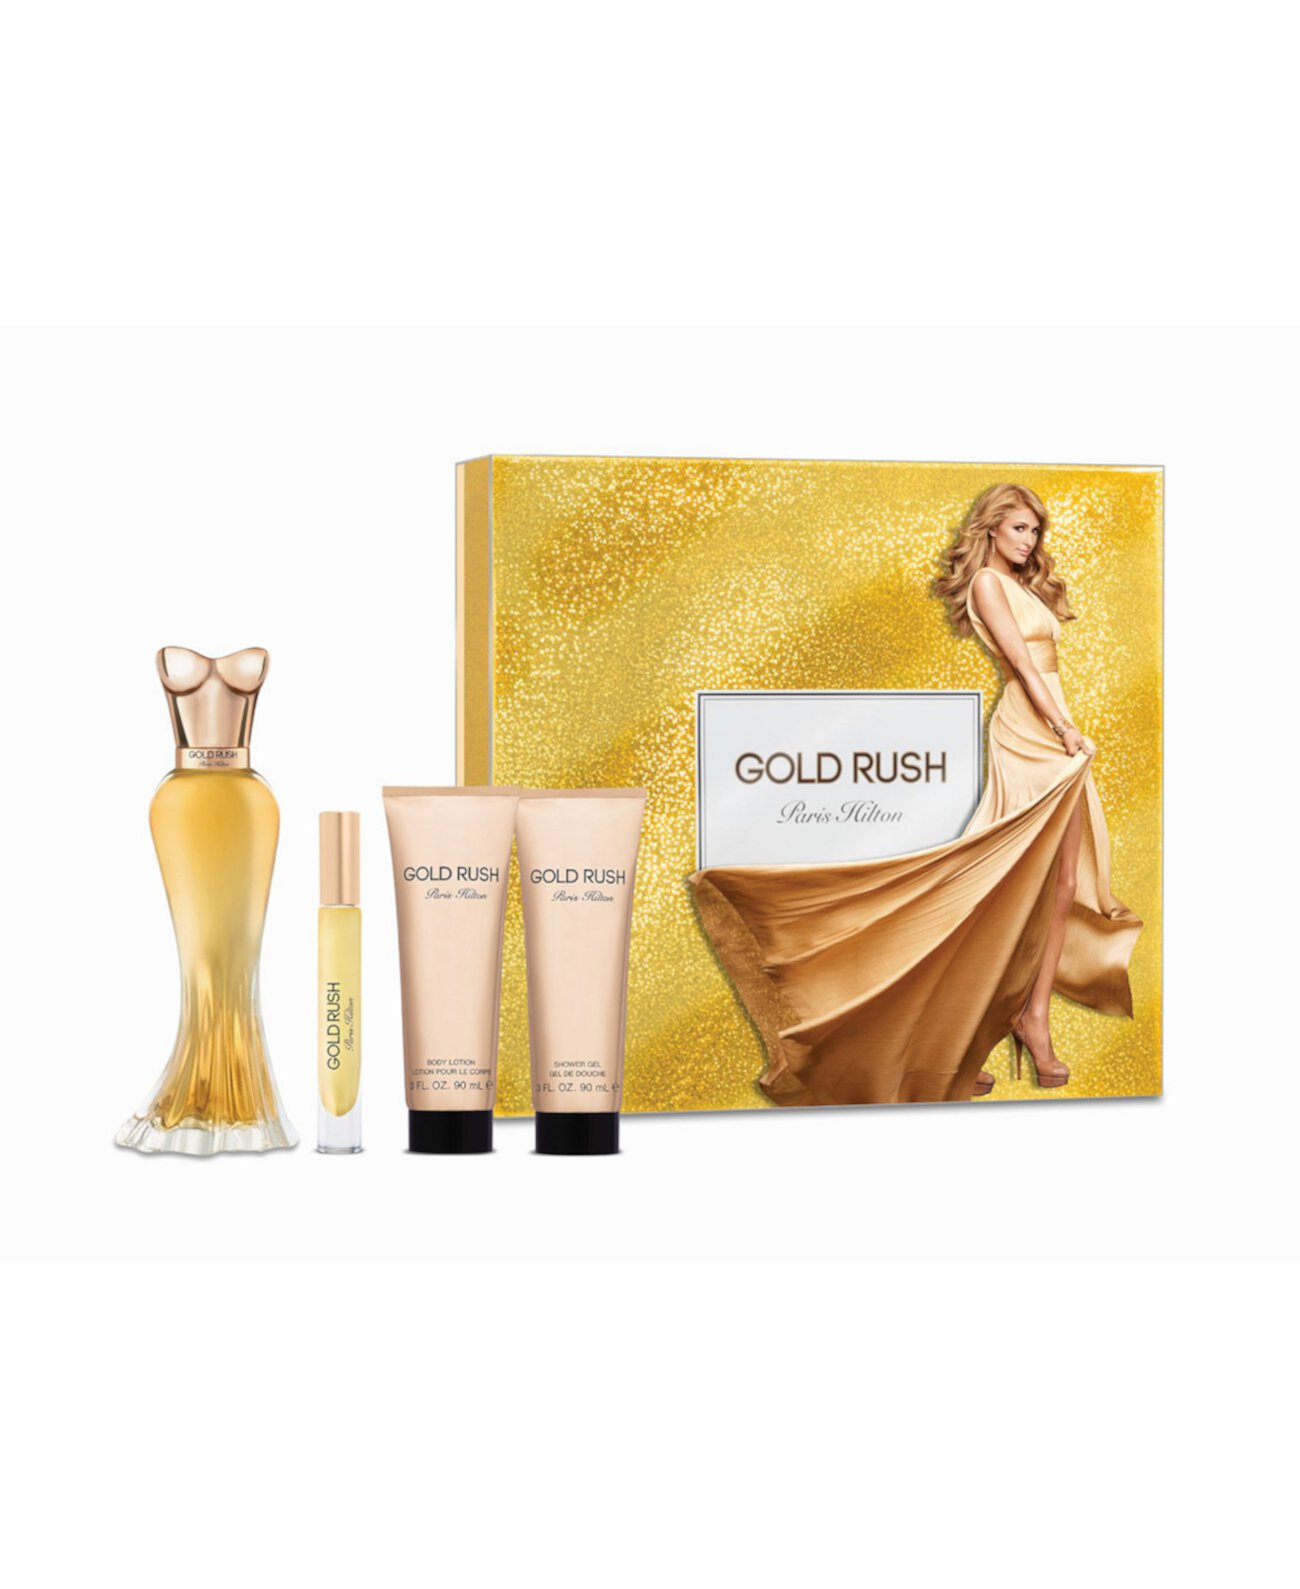 Подарочный набор для женщин "Золотая лихорадка", 9,6 эт. Унция Paris Hilton